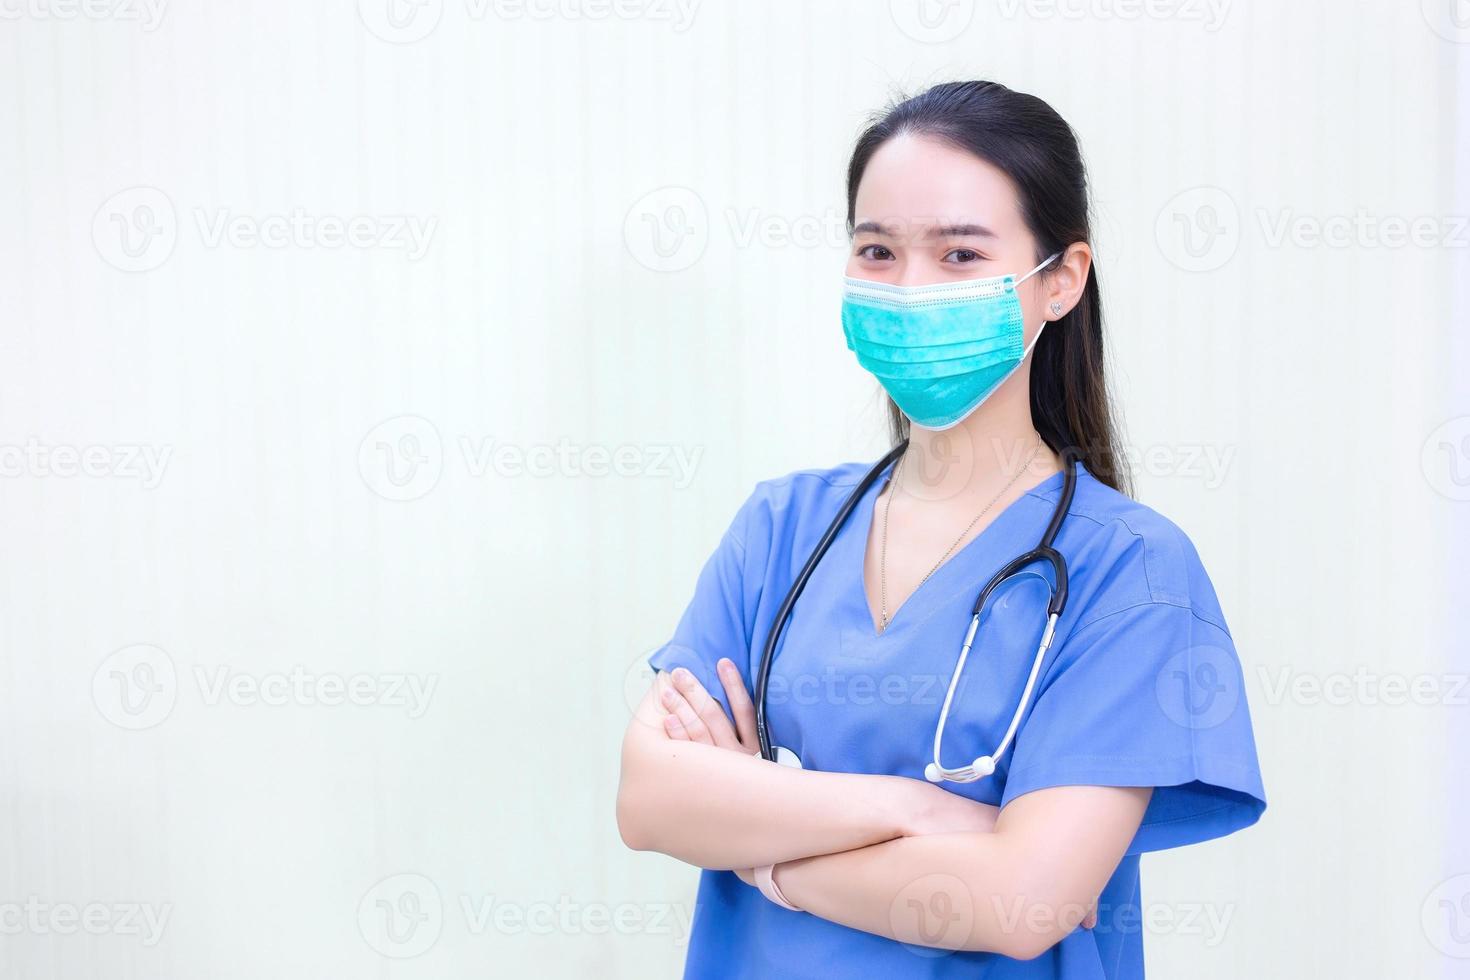 Der asiatische Arzt trägt einen medizinischen Mantel mit Stethoskop und medizinischer Gesichtsmaske, um die Atemwege im neuen normalen Konzept vor Krankheitserregern zu schützen. foto